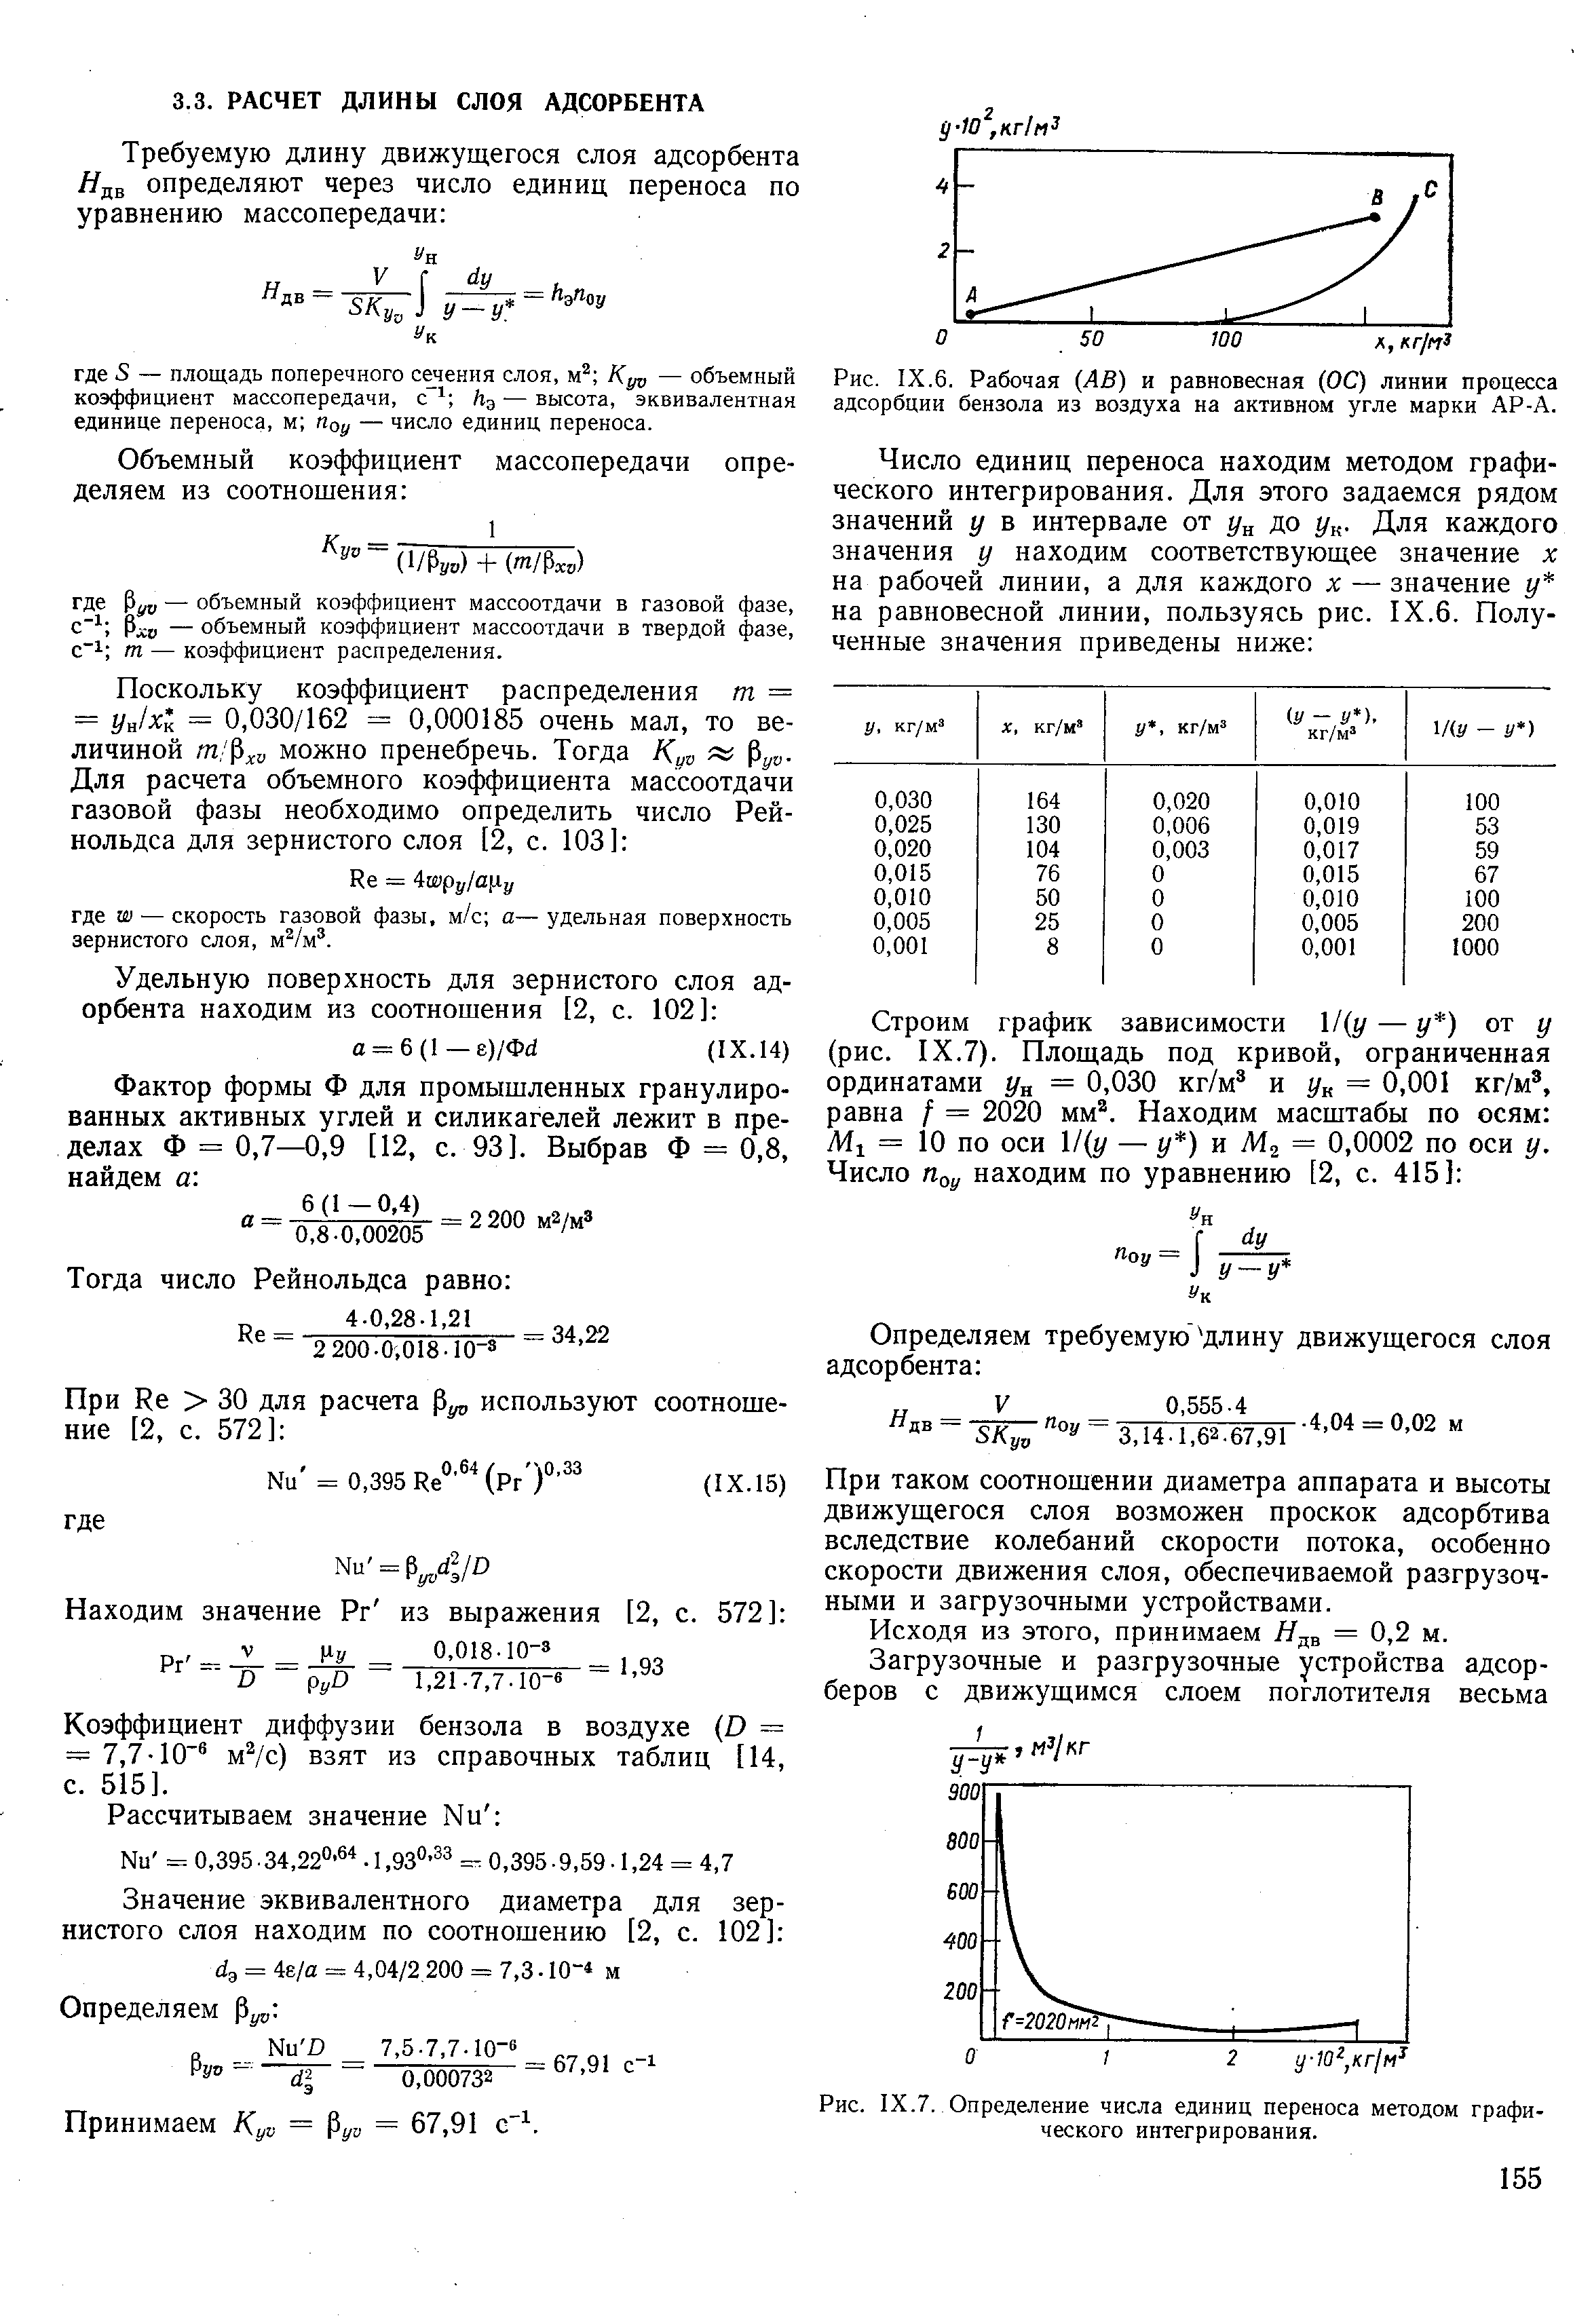 Коэффициент диффузии бензола в воздухе О = = 7,7-10 м с) взят из справочных таблиц [14, с. 515].